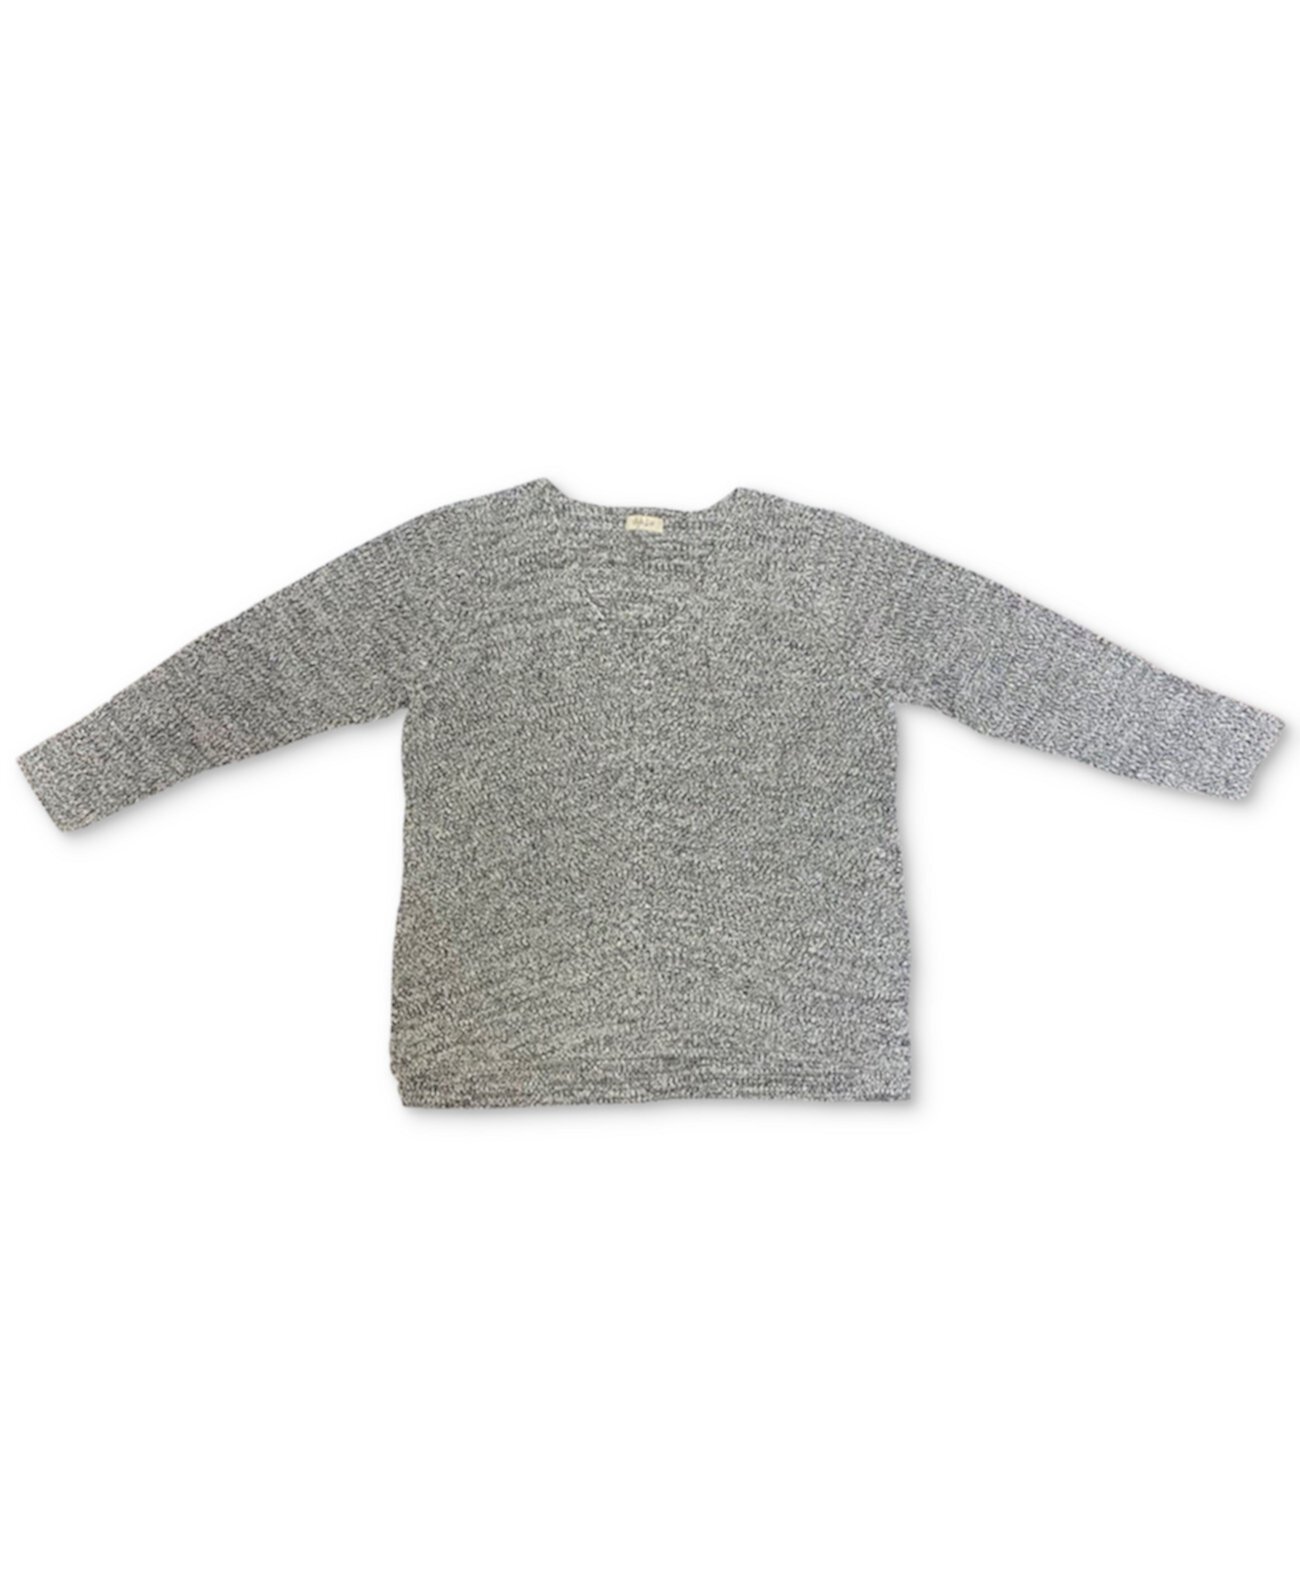 Хлопковый свитер больших размеров с v-образным вырезом, созданный для Macy's Style & Co